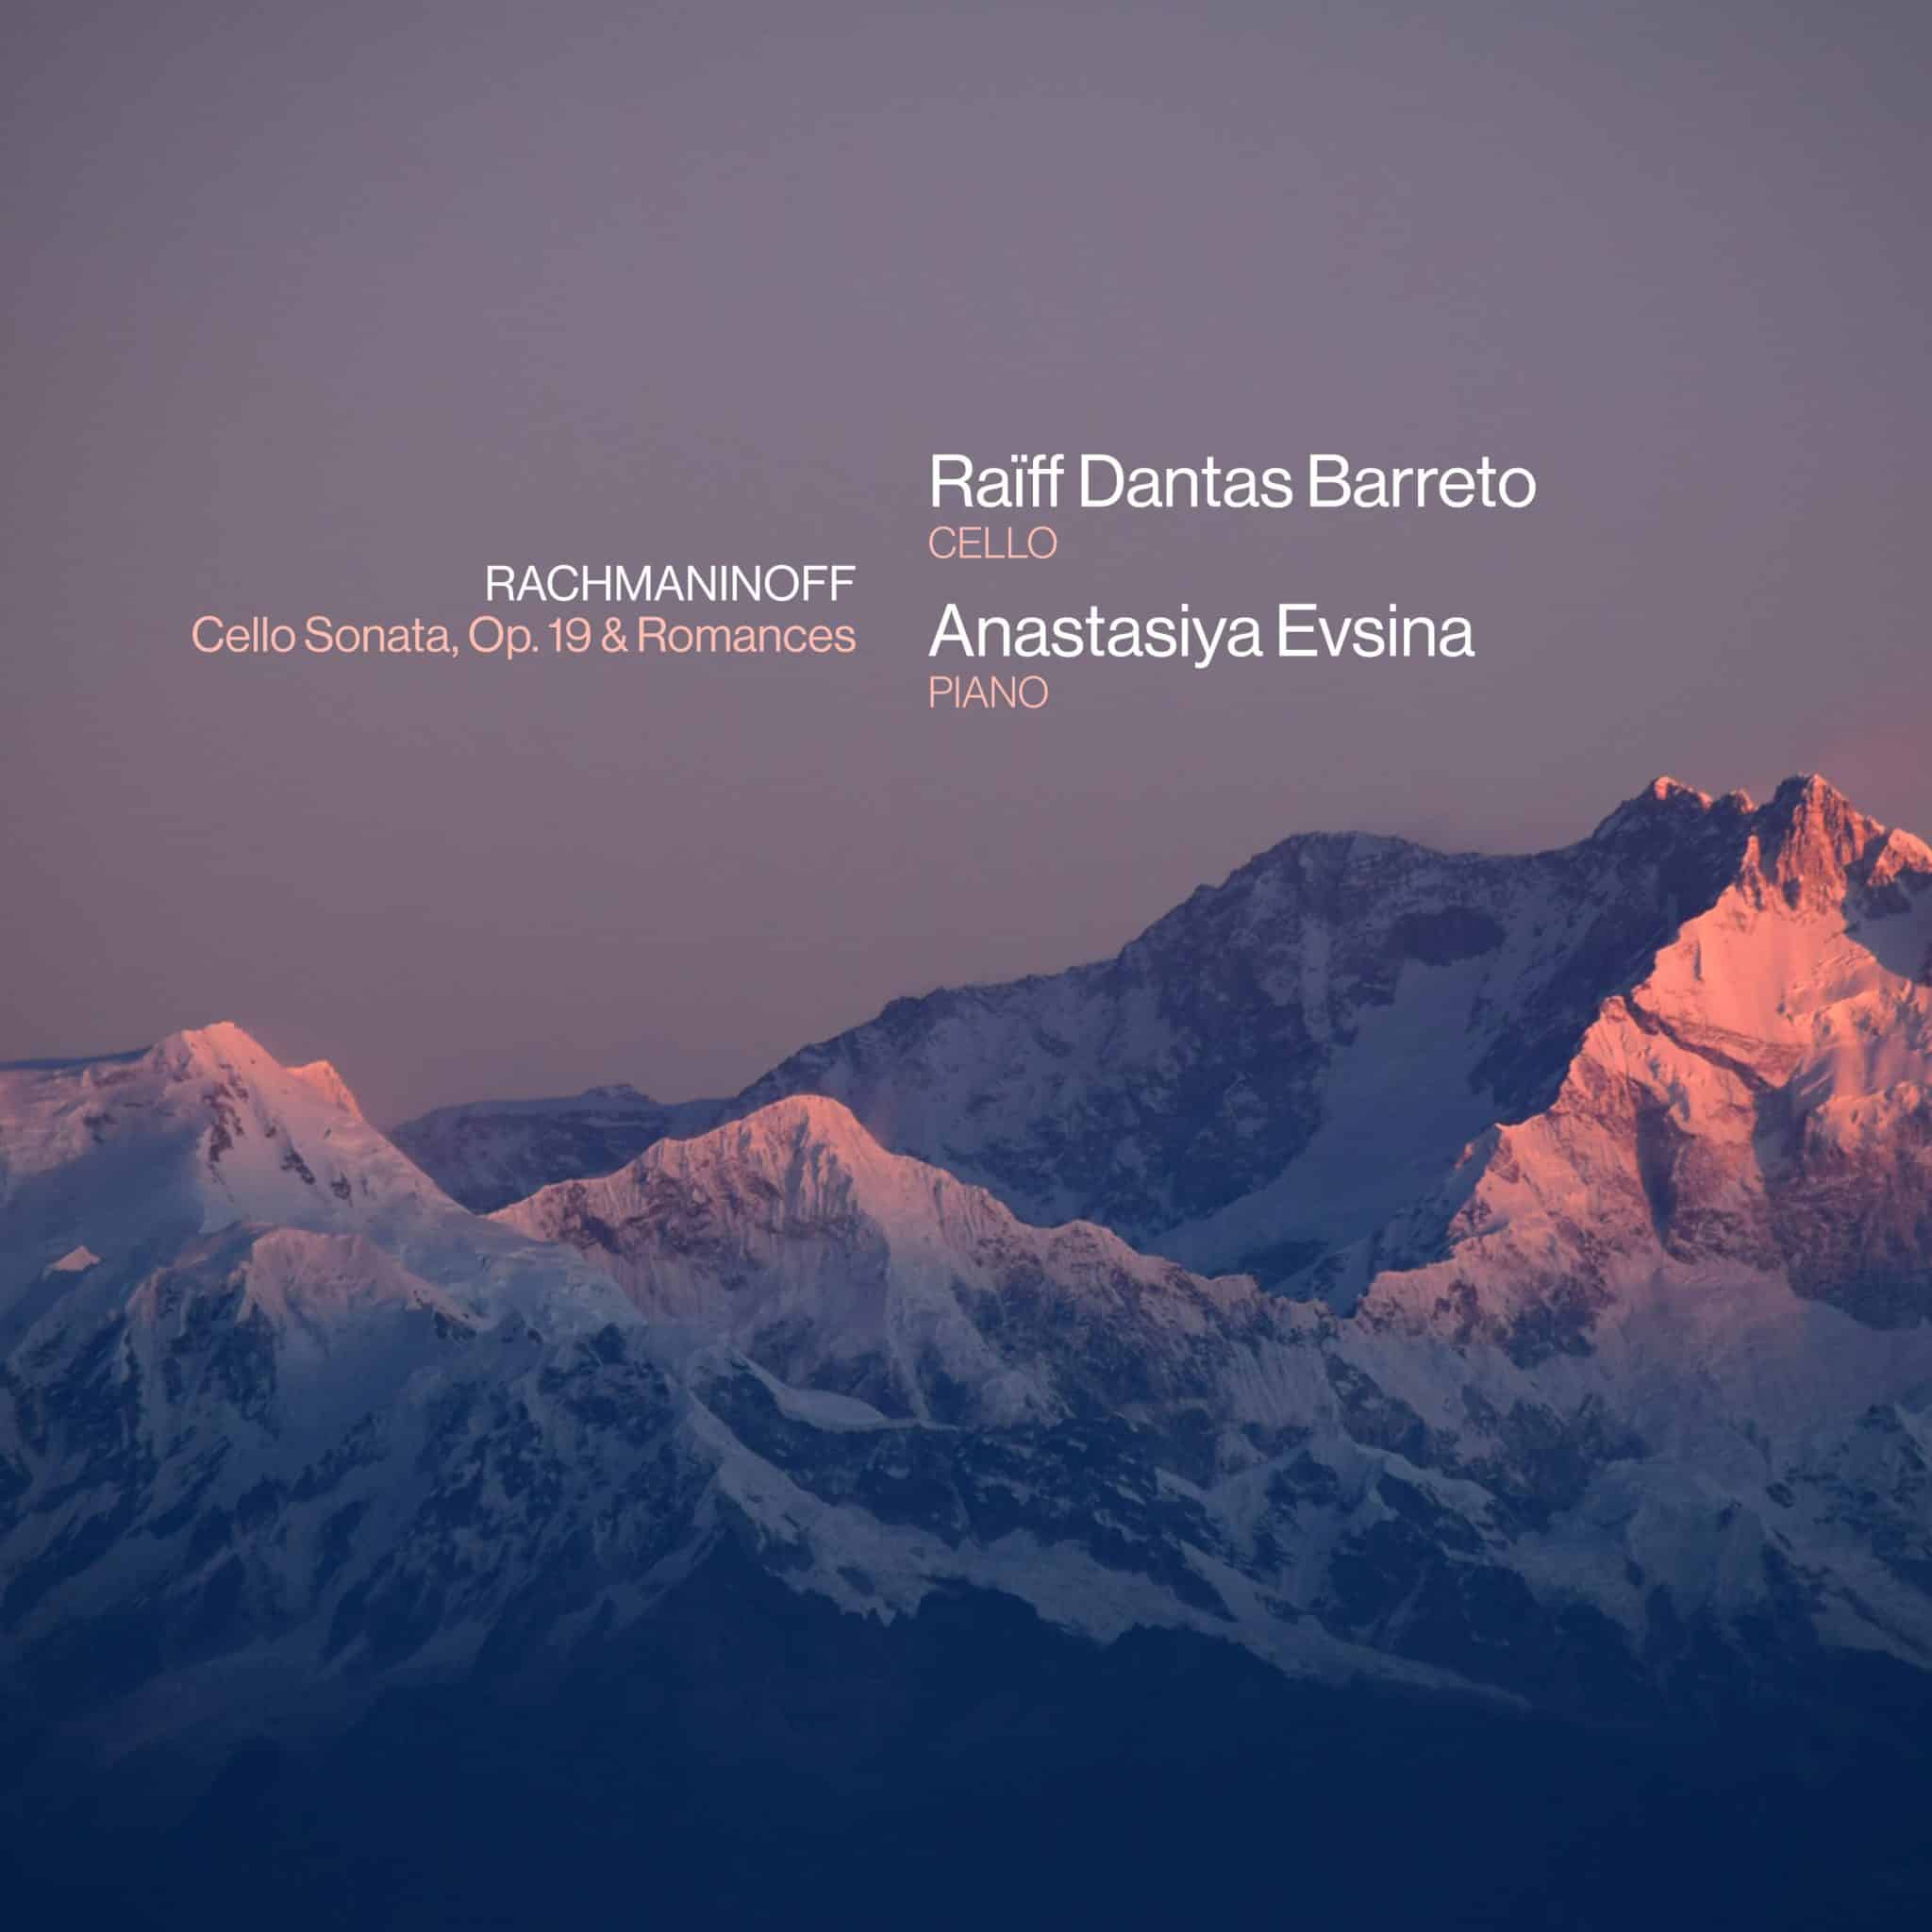 revistaprosaversoearte.com - 'Rachmaninoff: Cello Sonata, Op. 19 & Romances', álbum de Raïff Dantas Barreto e Anastasiya Evsina